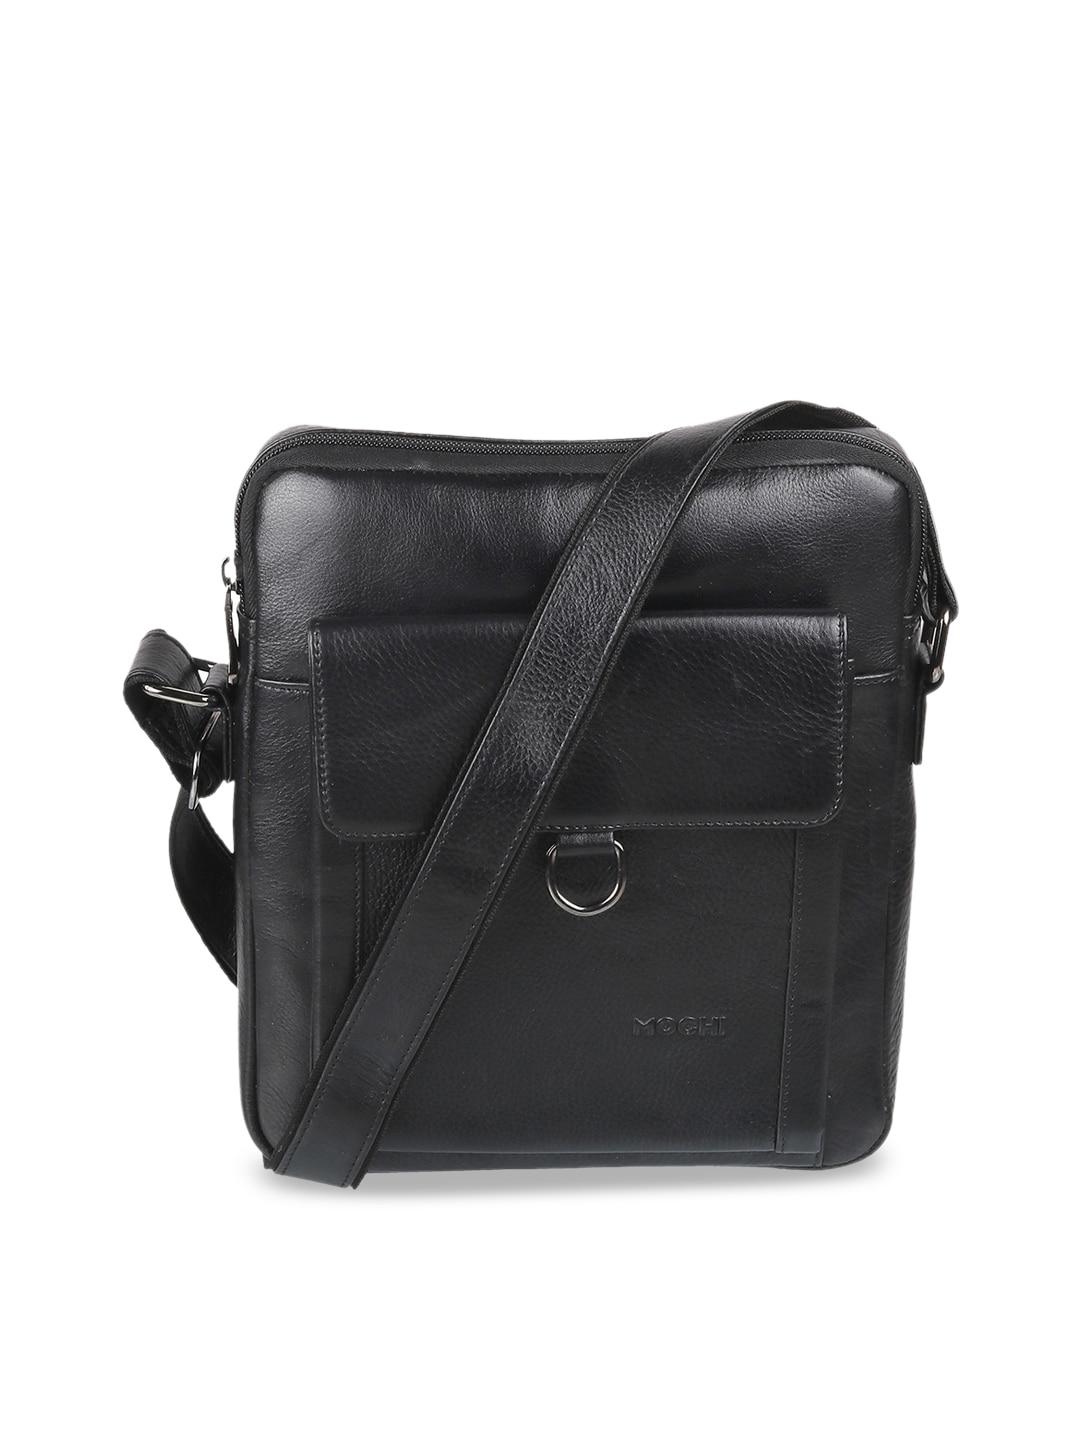 Mochi Black Leather Shopper Sling Bag